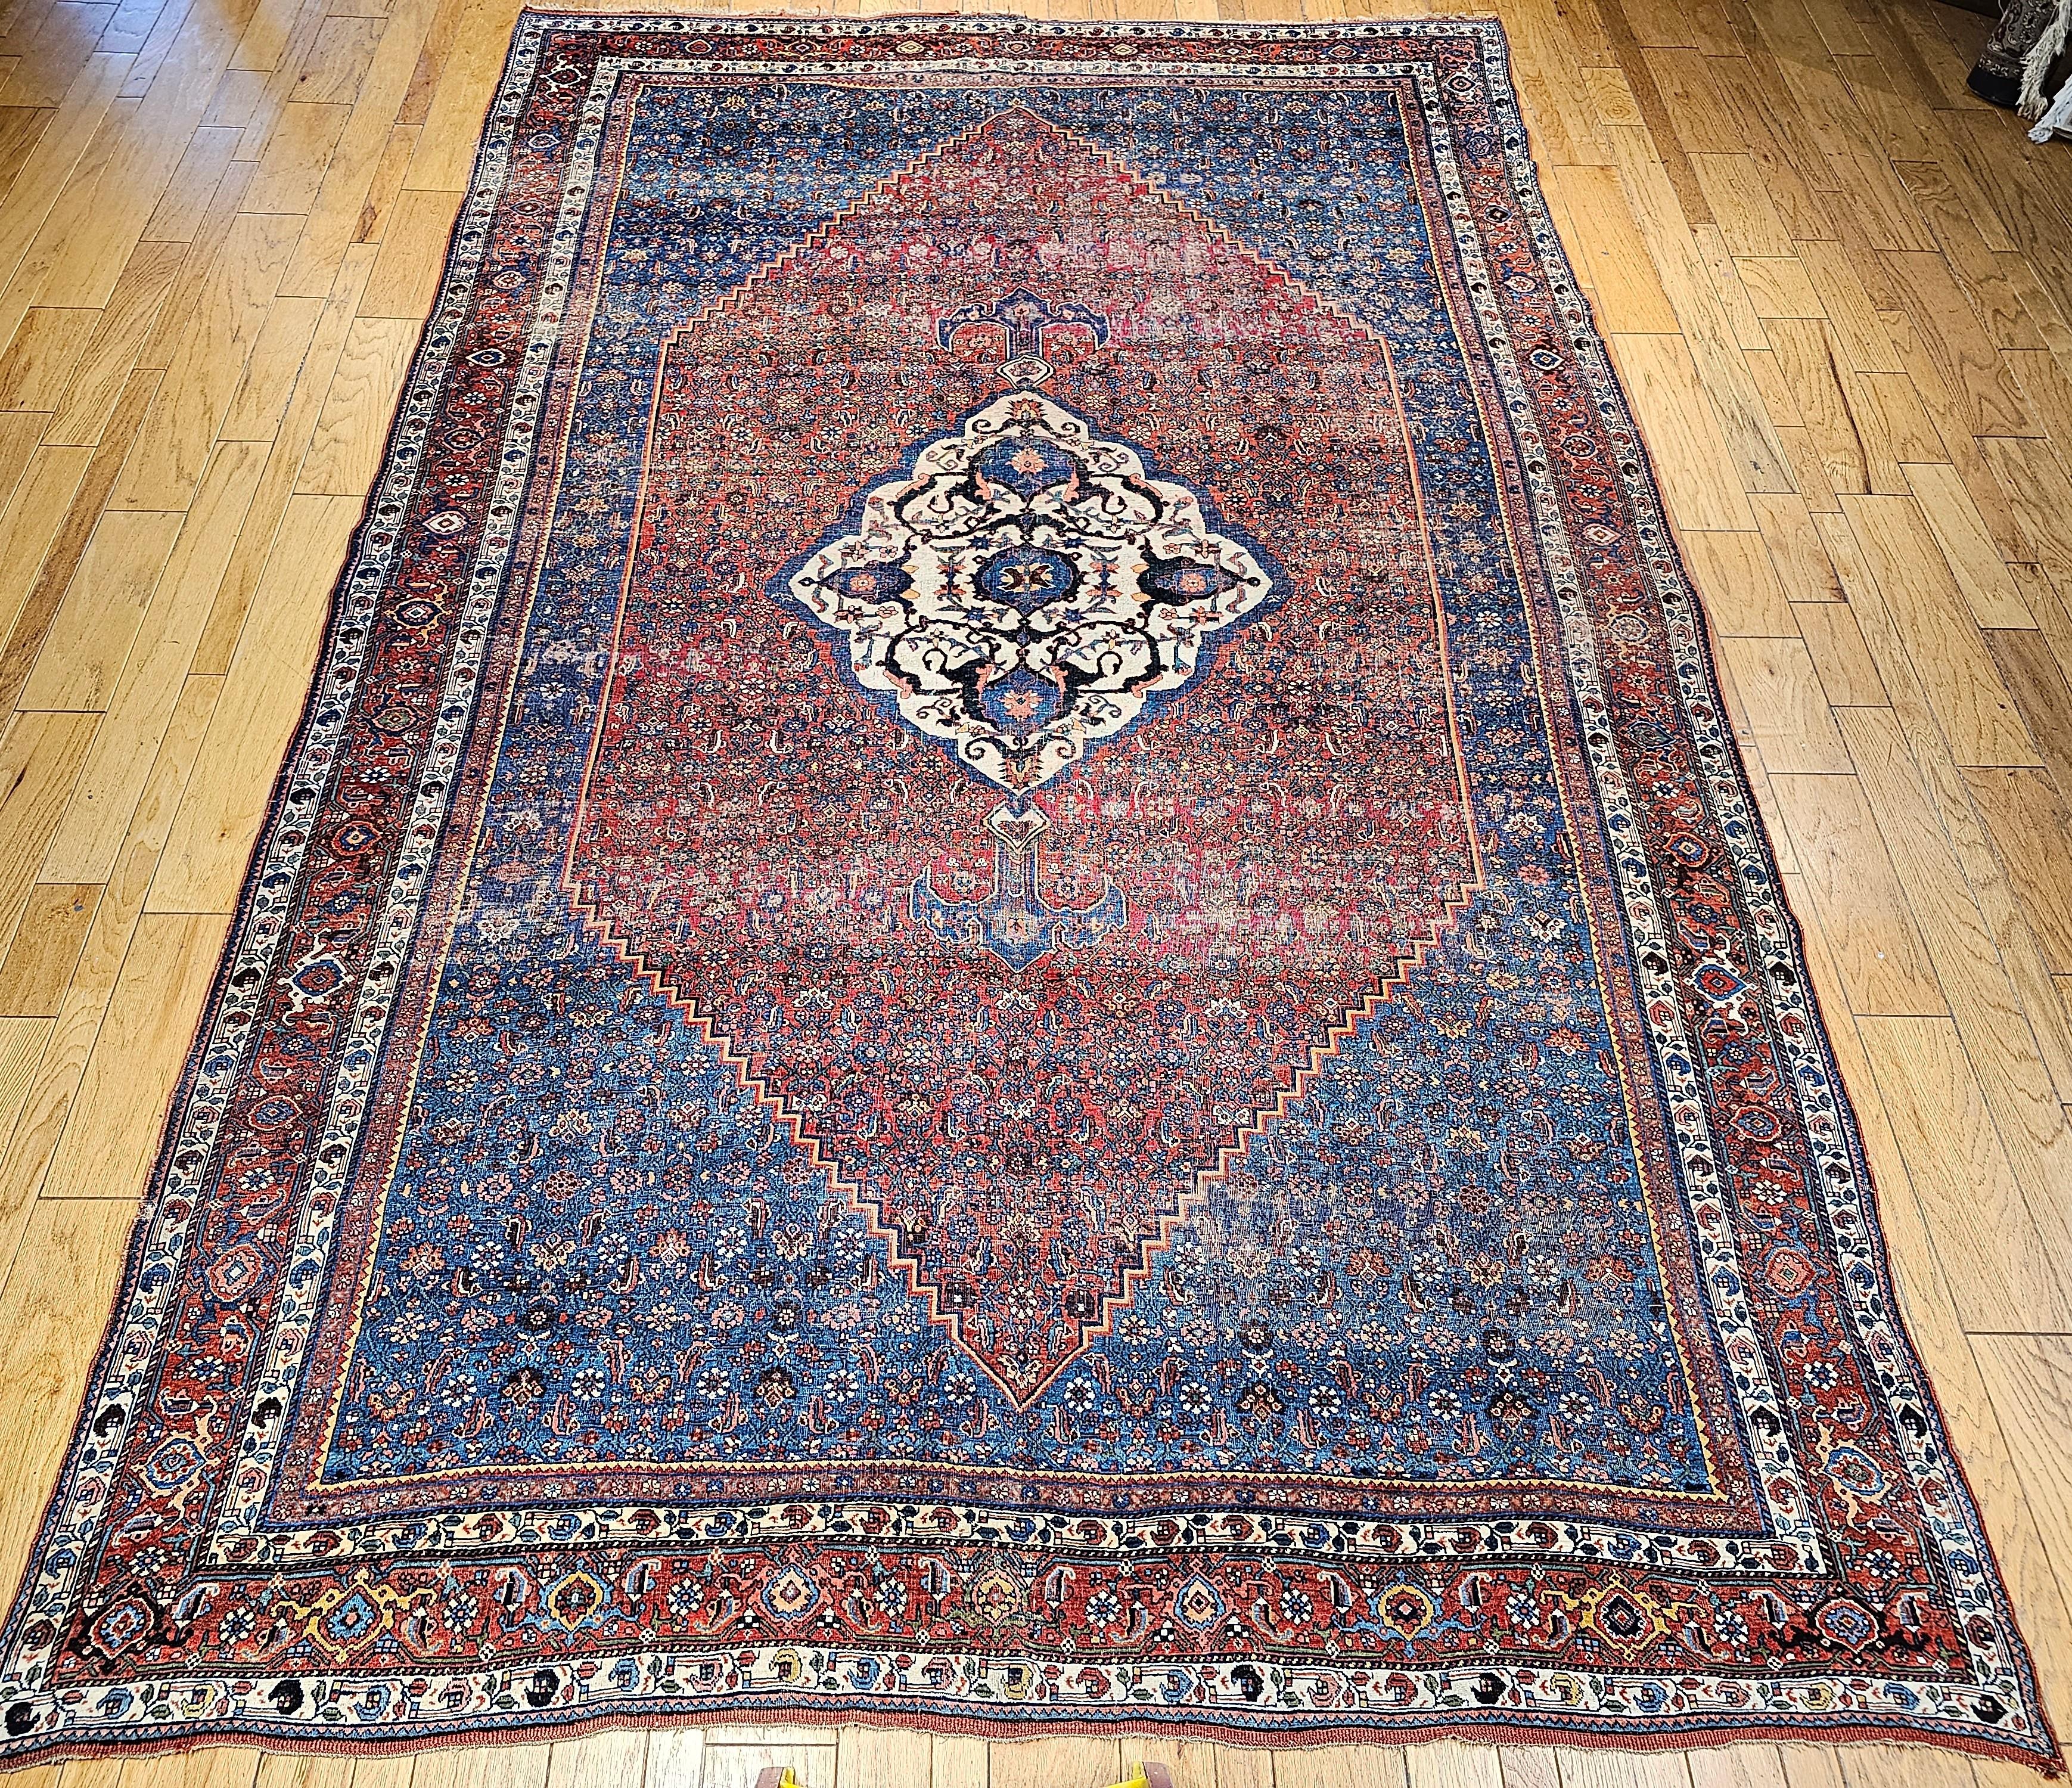 Magnifique Bidjar persan surdimensionné  Ce tapis est un excellent exemple de l'art du tissage des tapis persans du dernier quart des années 1800. Le tapis Bidjar (Bijar) est un champ à 